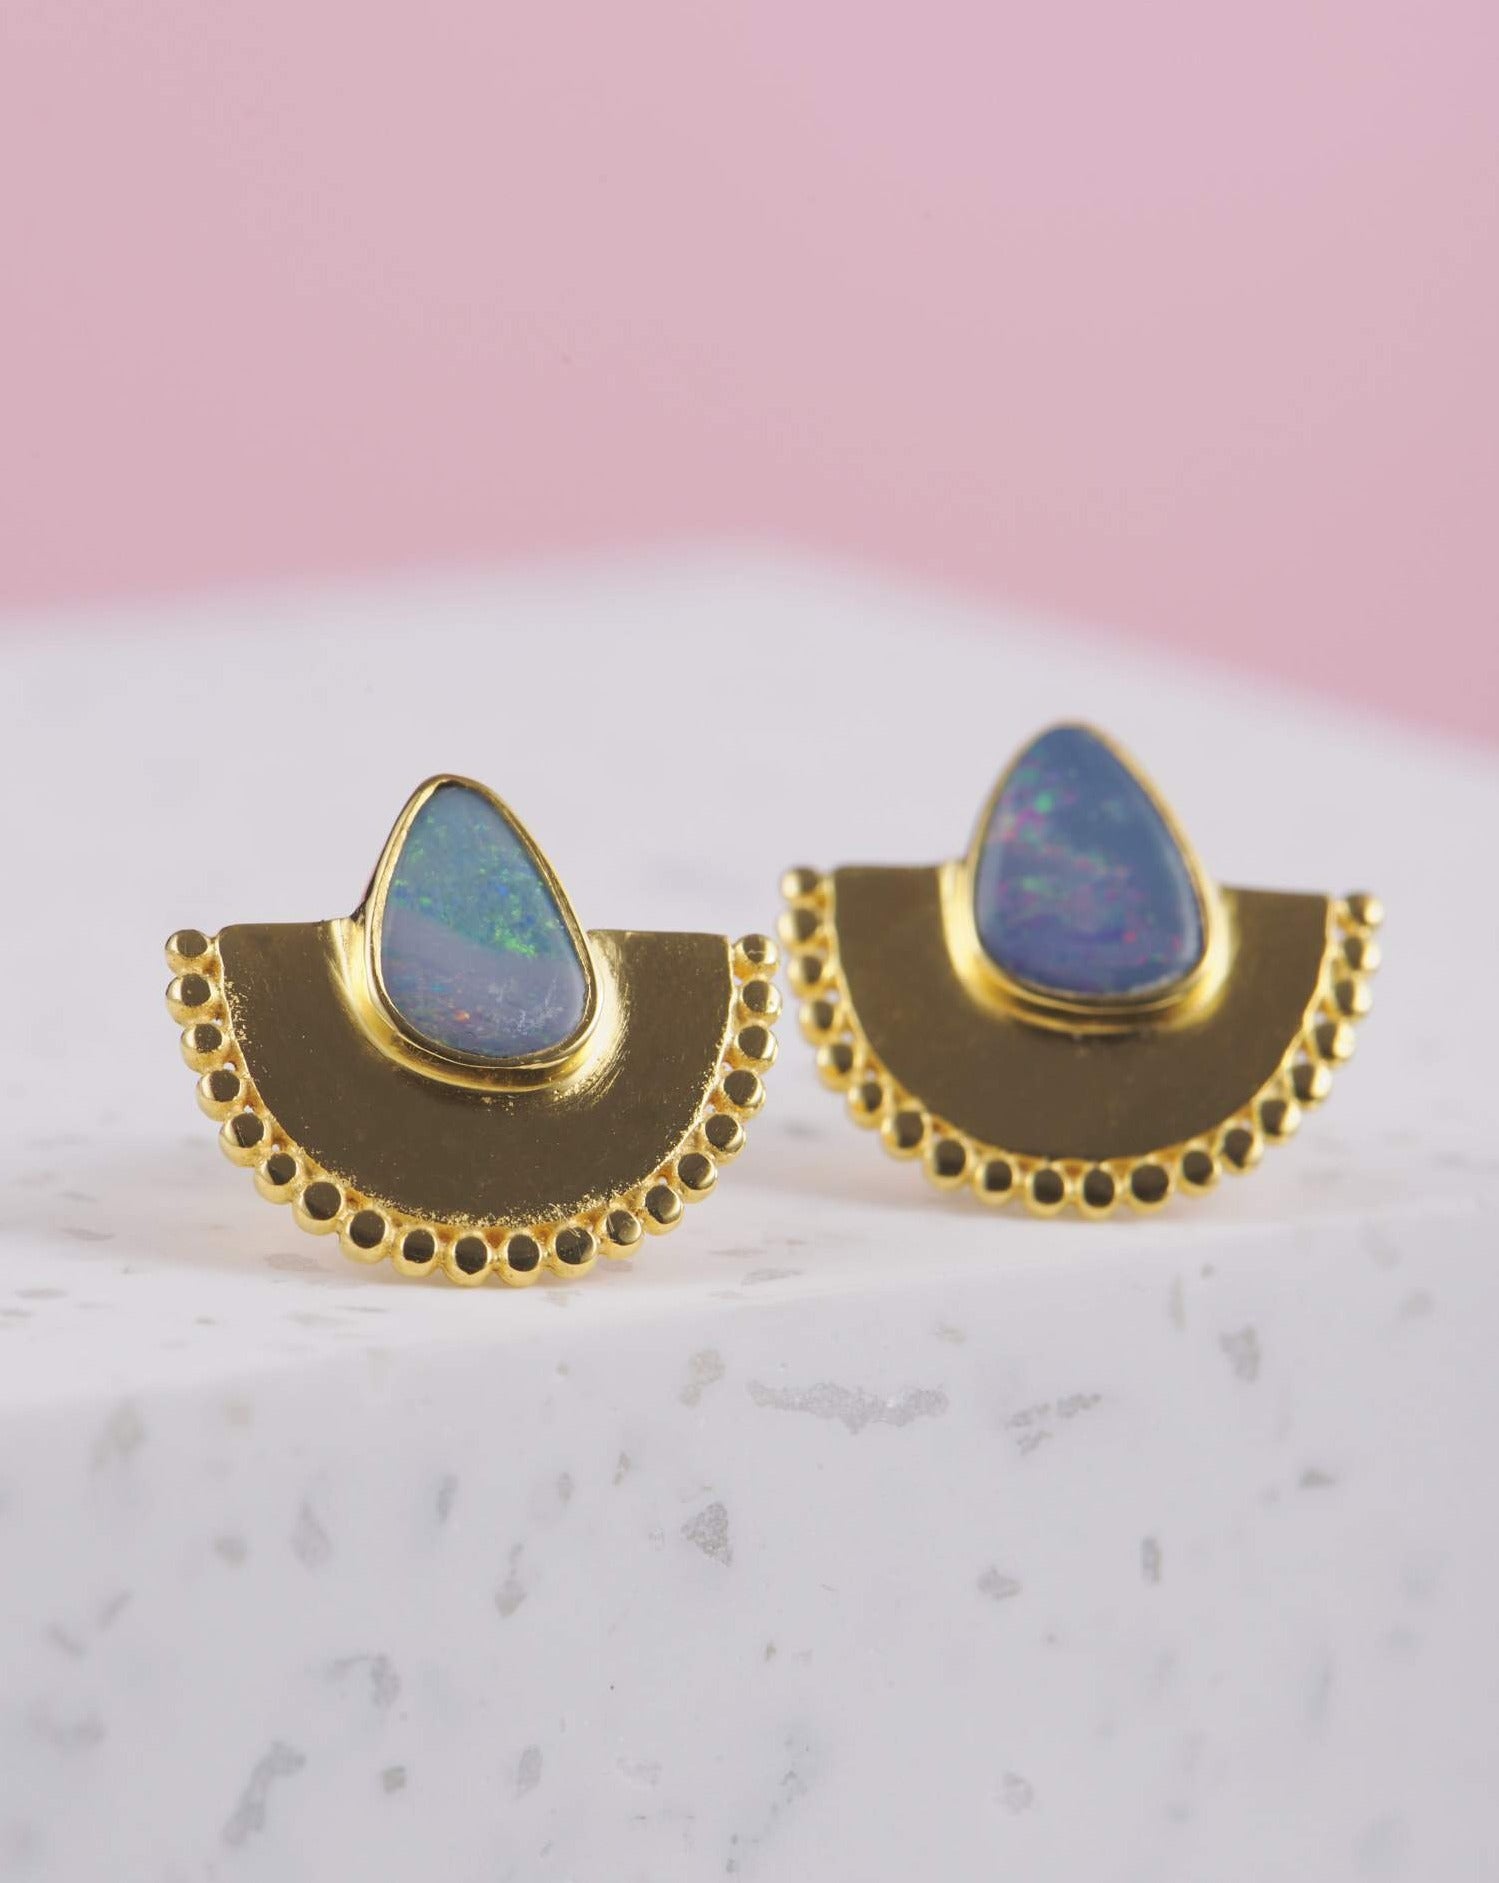 Handgemachte Ohrringe mit Opal Steinen | 925 Silber - 3 Mikron Vergoldung | Fair und umweltschonend auf Bali handgefertigt | VERLAN Jewellery | Fairfashion